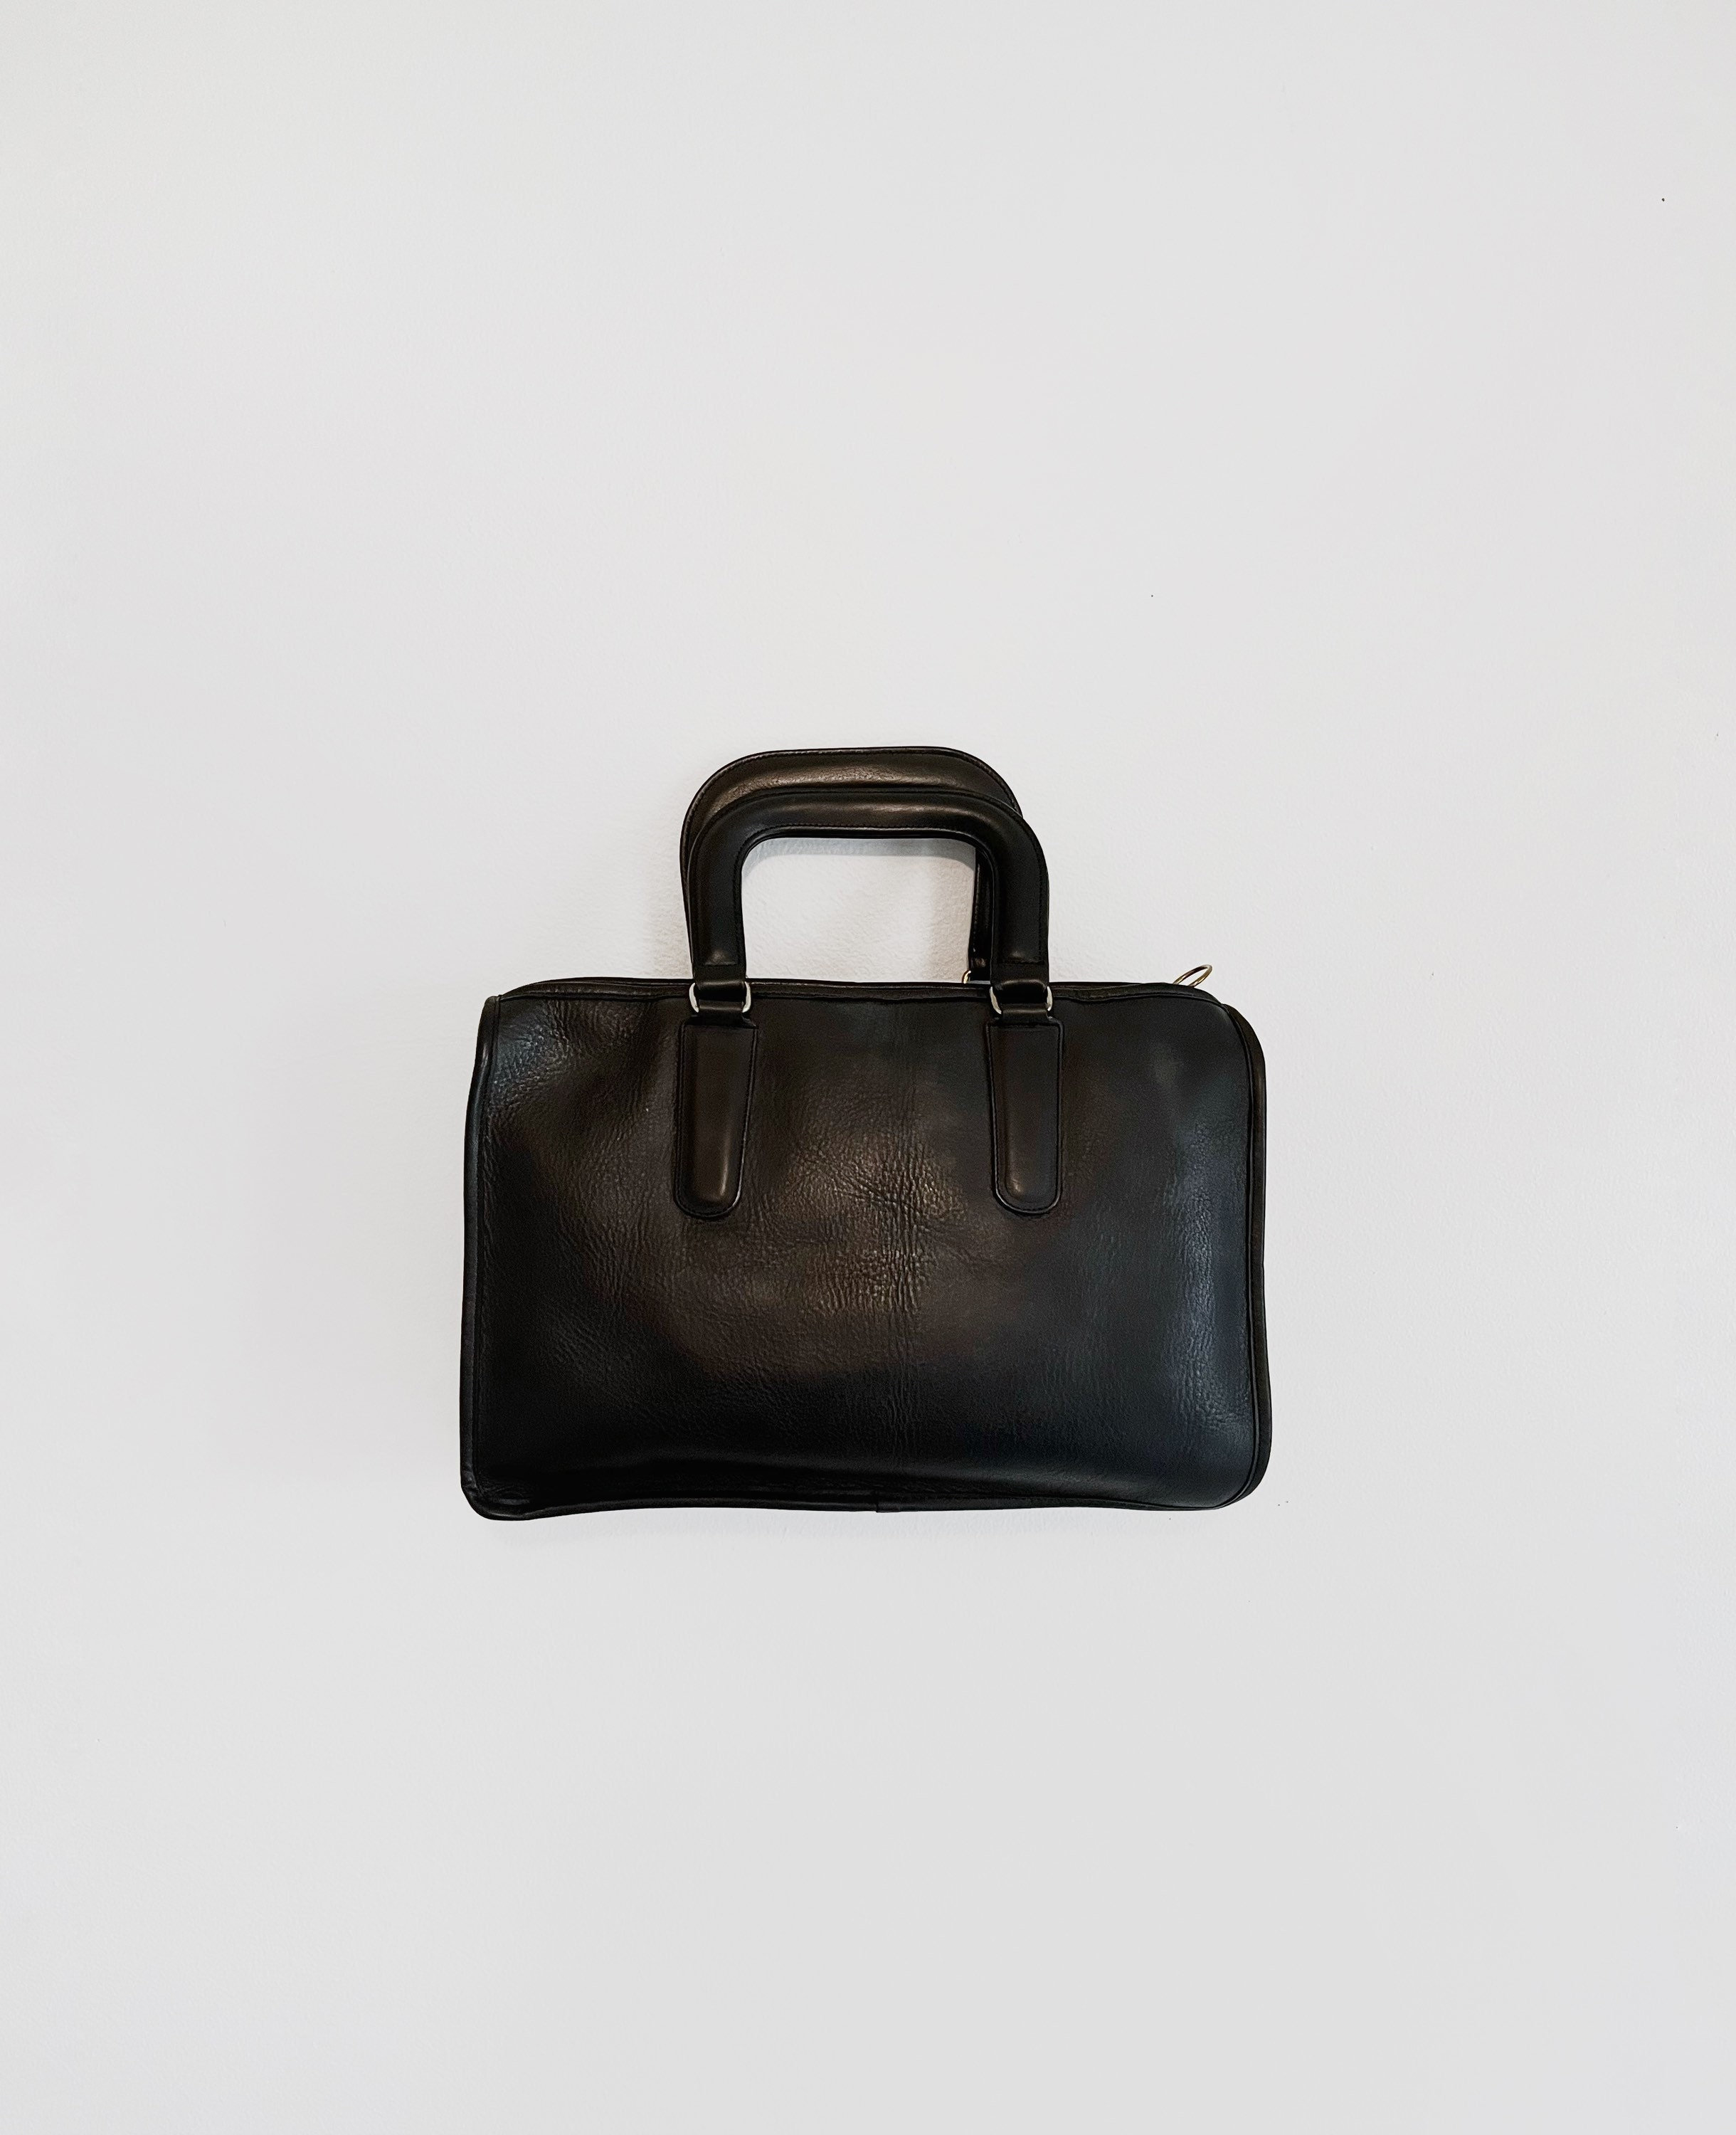 Coach Small Black and Grey Monogram Bag Handbag Mini - Gem